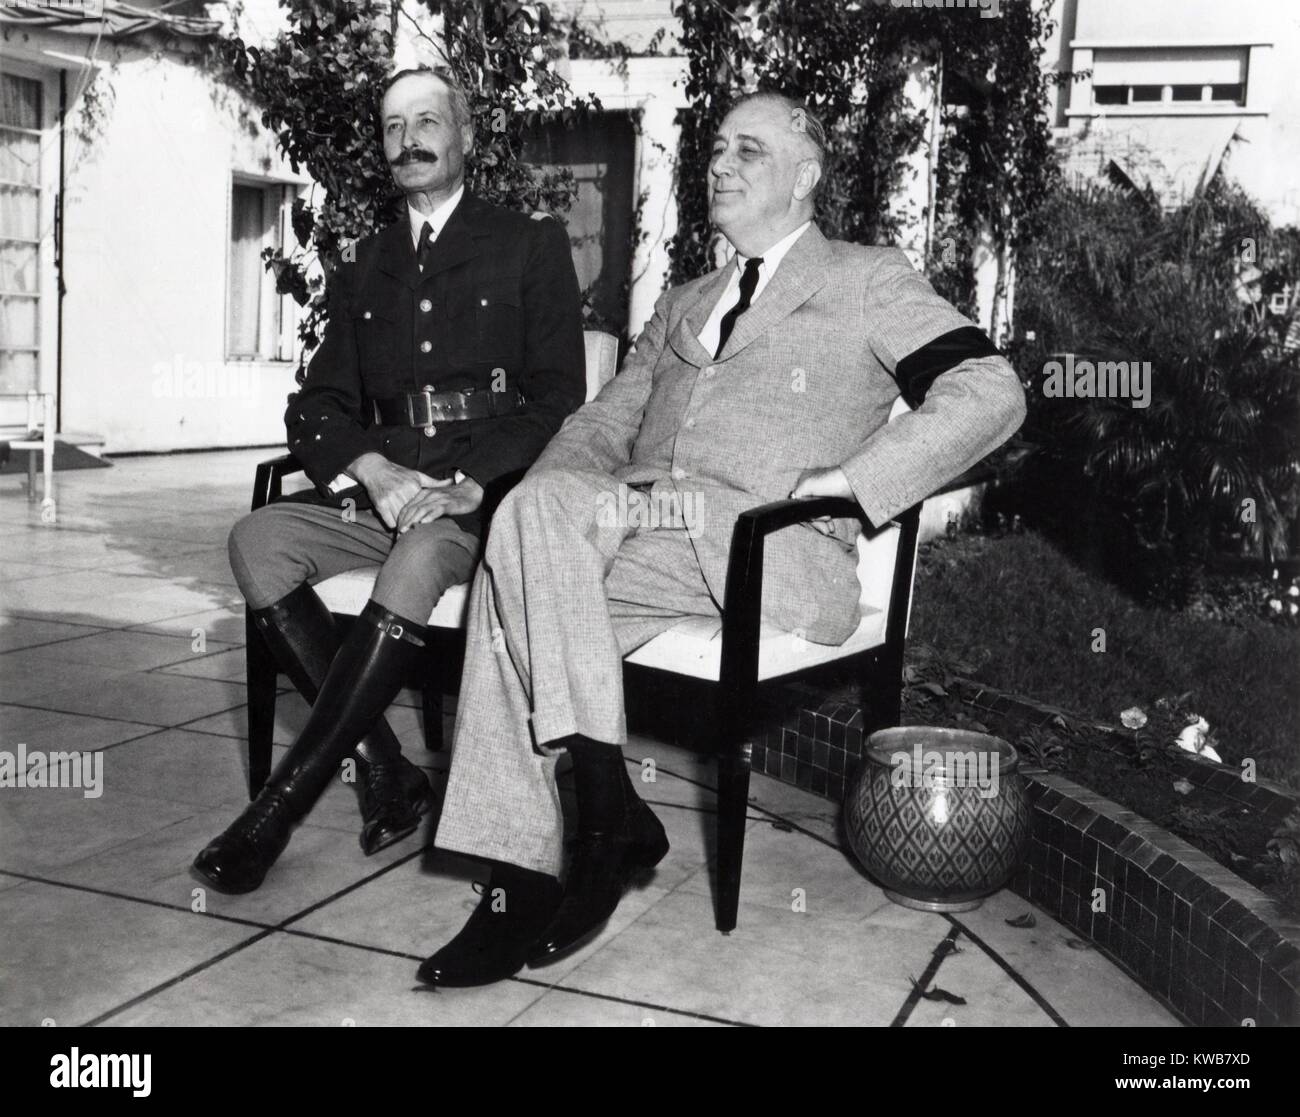 Präsident Franklin Roosevelt fotografiert mit dem französischen General Henri Honore Giraud, 31.01.1943. Giraud wurde in Verhandlungen mit der Nordafrikanischen Vichy Regime, die versuchen, sie in die britisch-amerikanische Allianz gegen Deutschland zu bringen. Weltkrieg 2. (BSLOC 2014 8 189) Stockfoto